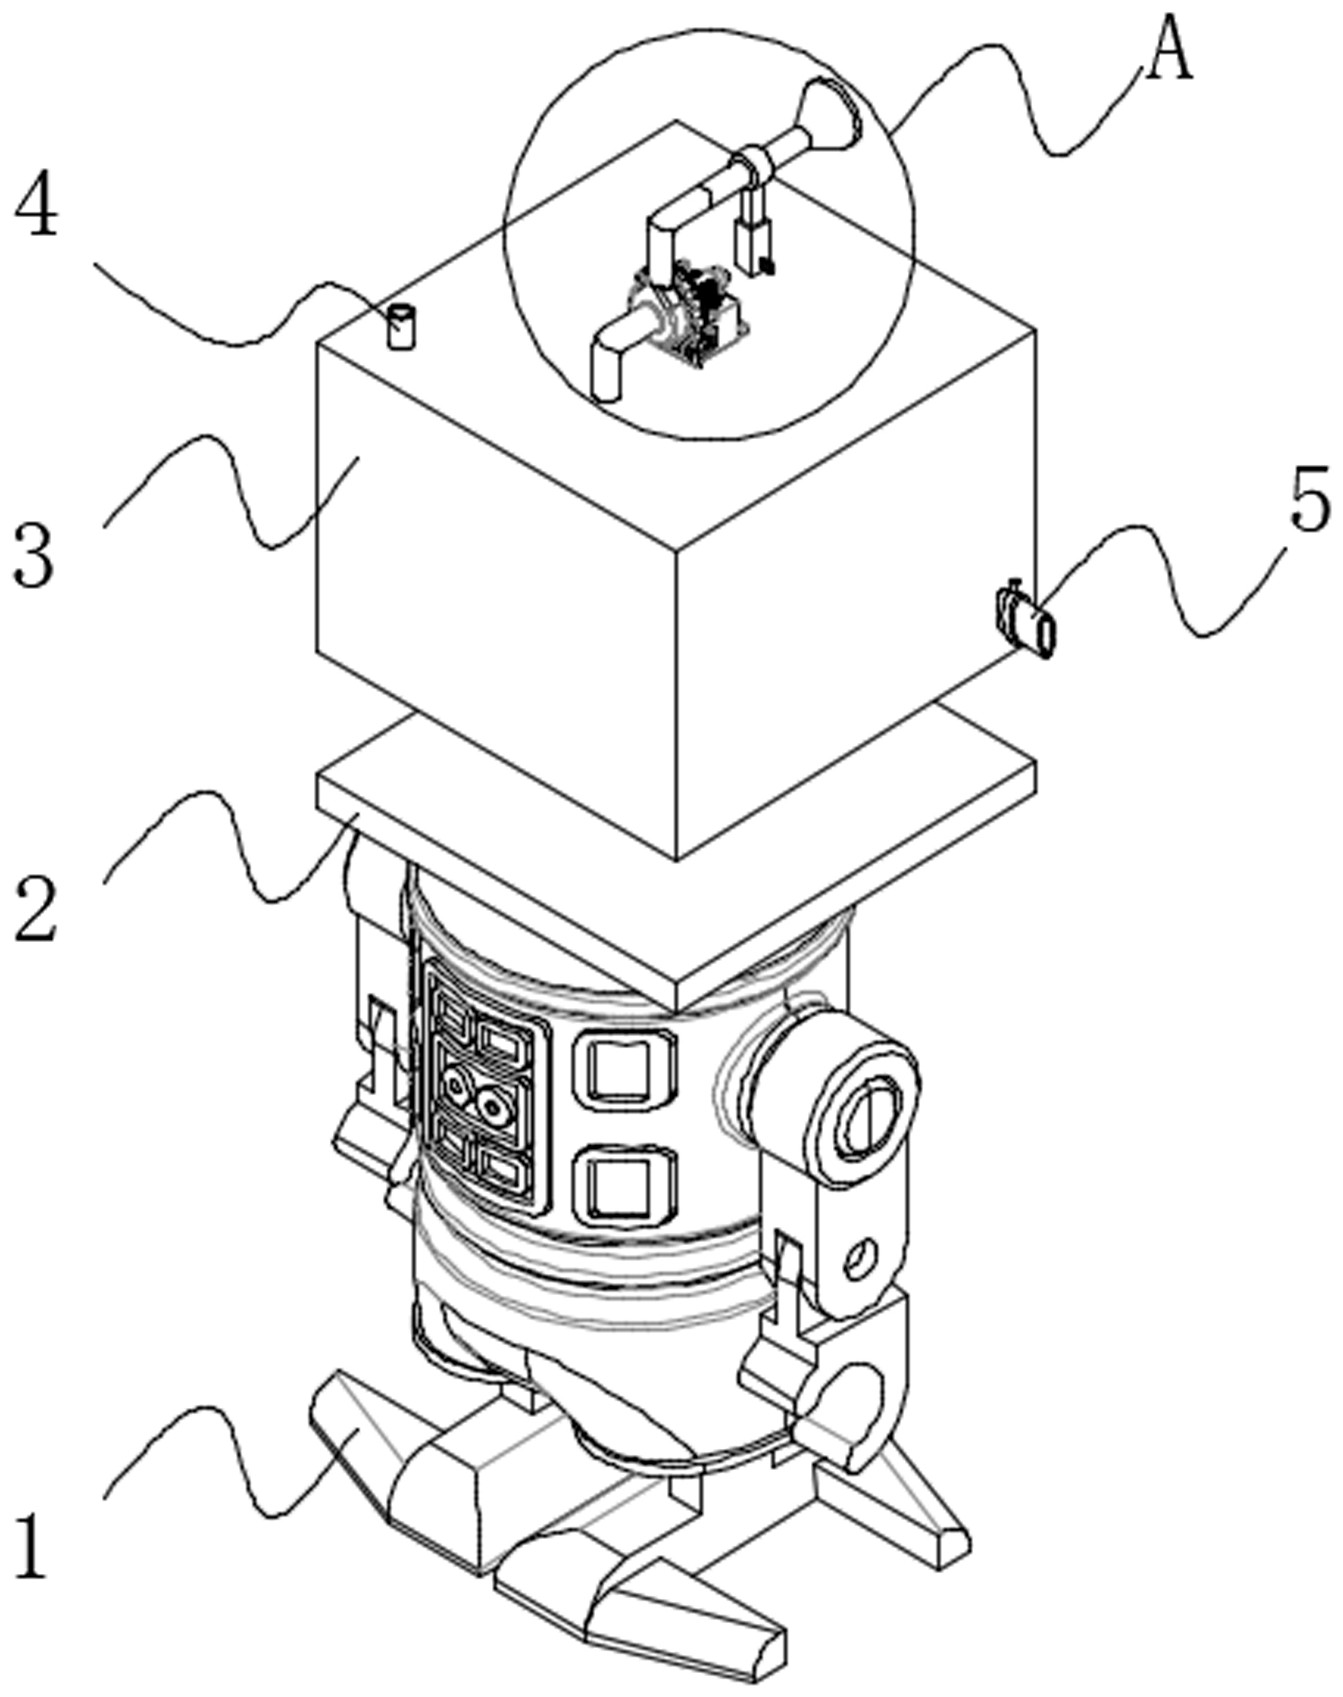 一种应用于室内的喷水效果好的园林喷水机器人-专利